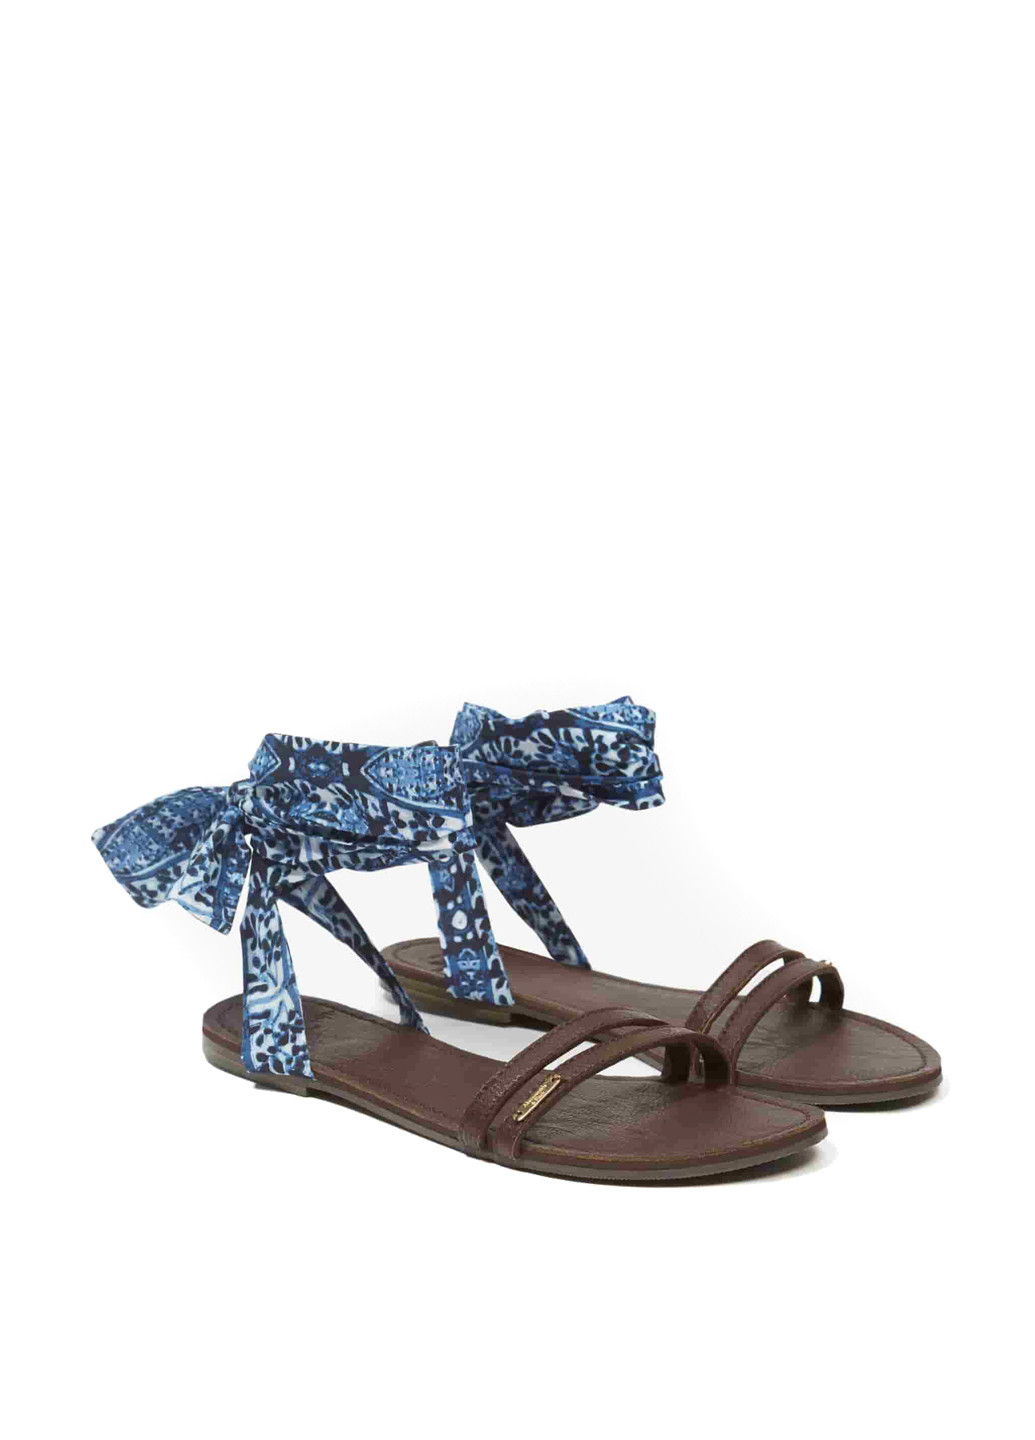 Голубые босоножки Abercrombie & Fitch на шнурках с рисунком